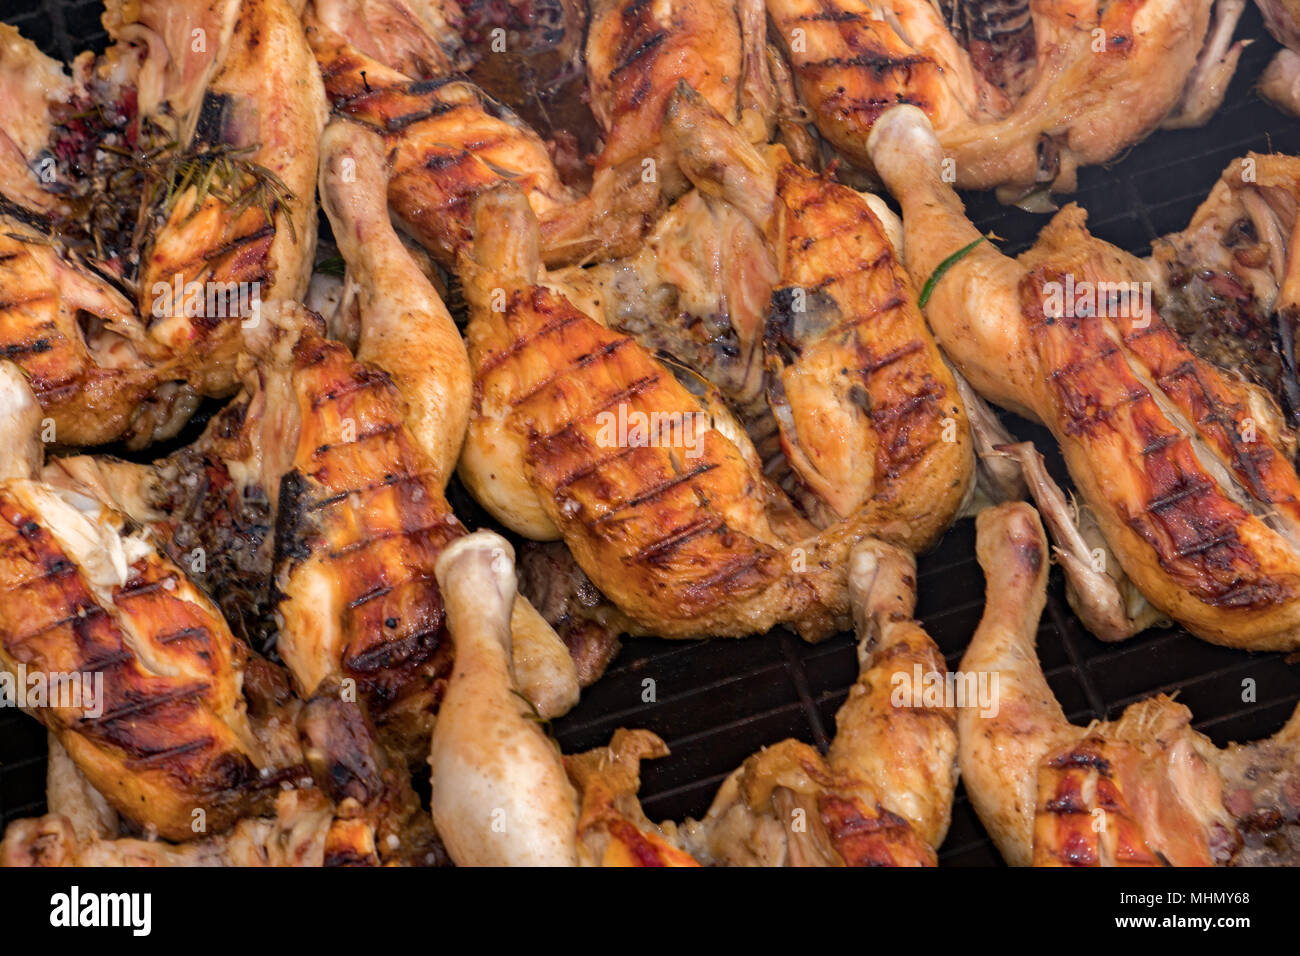 https://c8.alamy.com/compfr/mhmy68/de-nombreux-poulets-grilles-au-barbecue-grille-detail-mhmy68.jpg